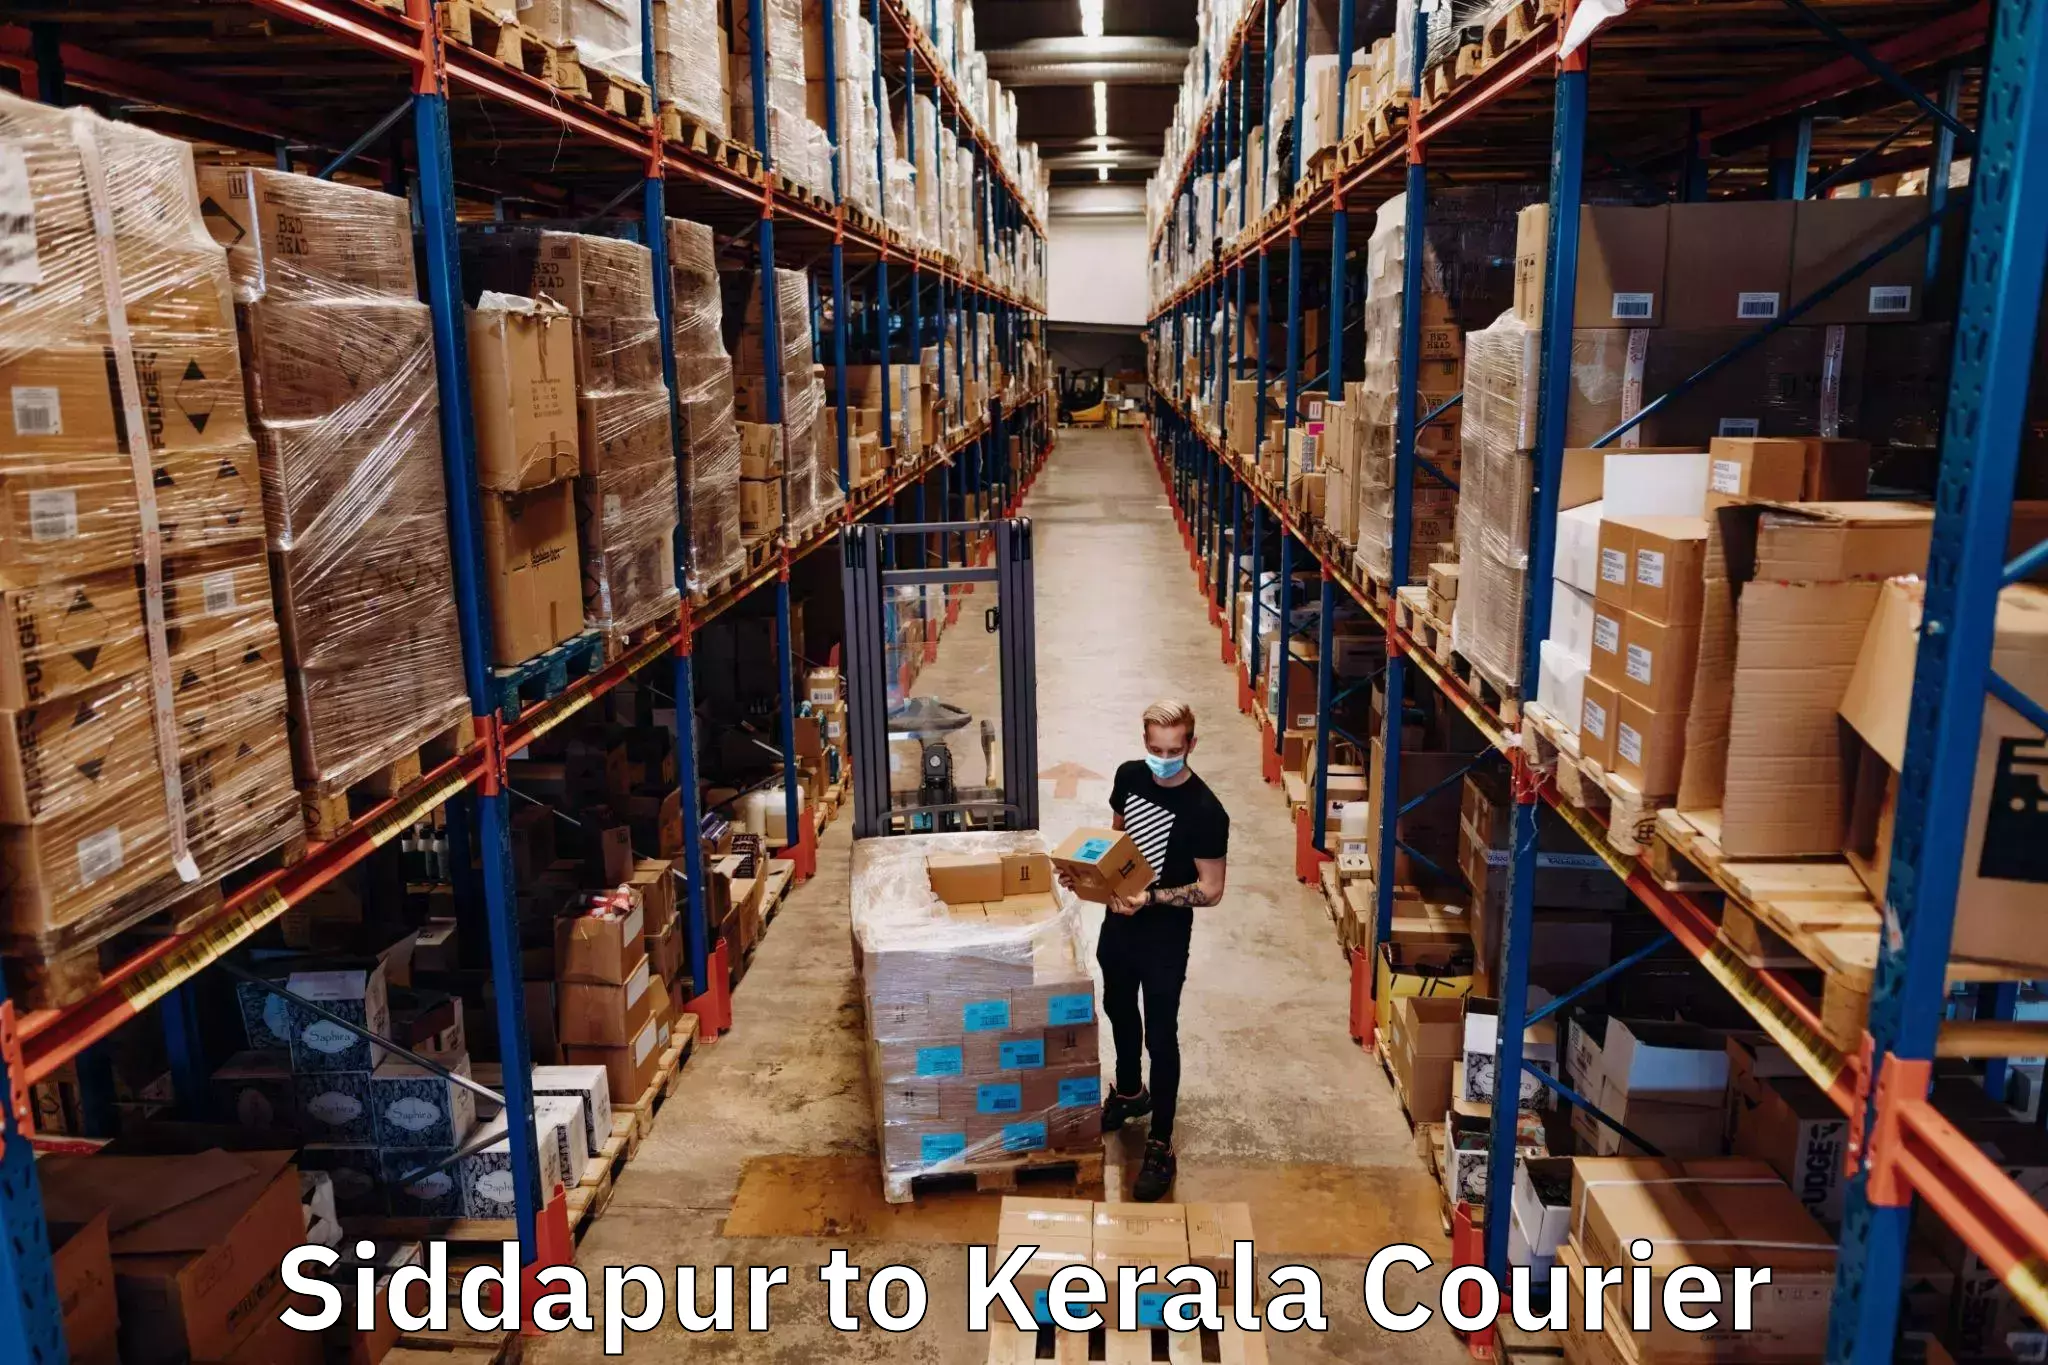 Courier service comparison Siddapur to Perambra